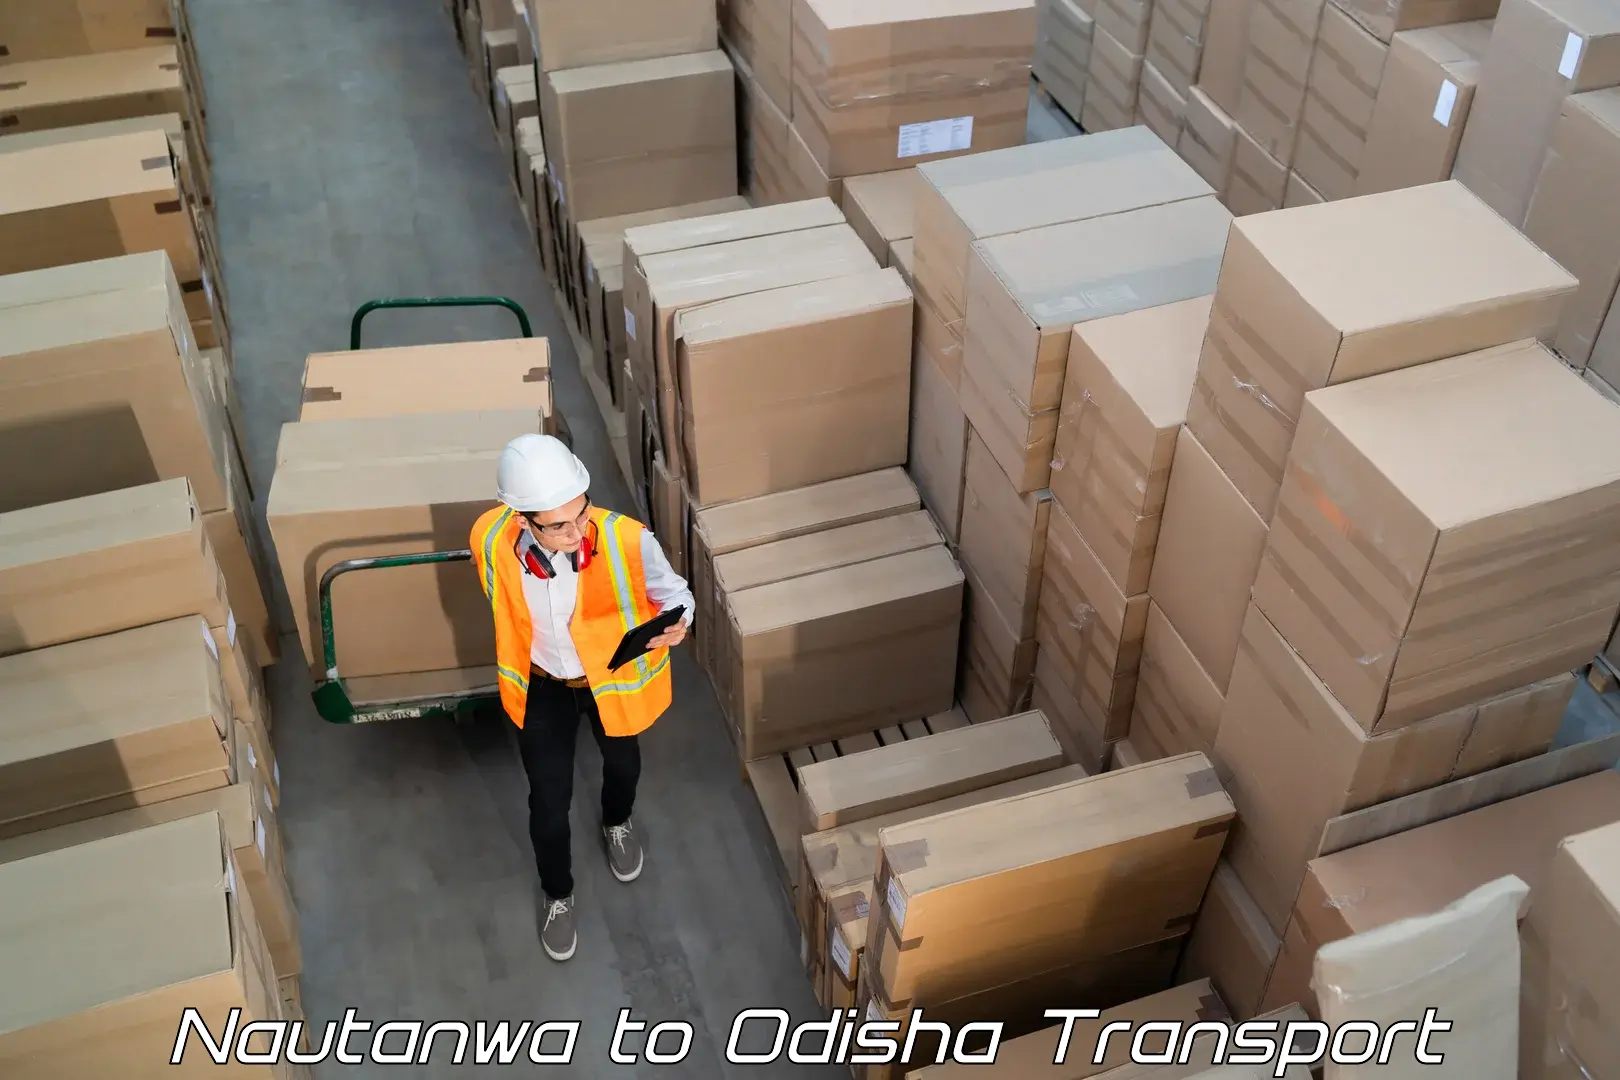 Cargo transportation services Nautanwa to Mathili